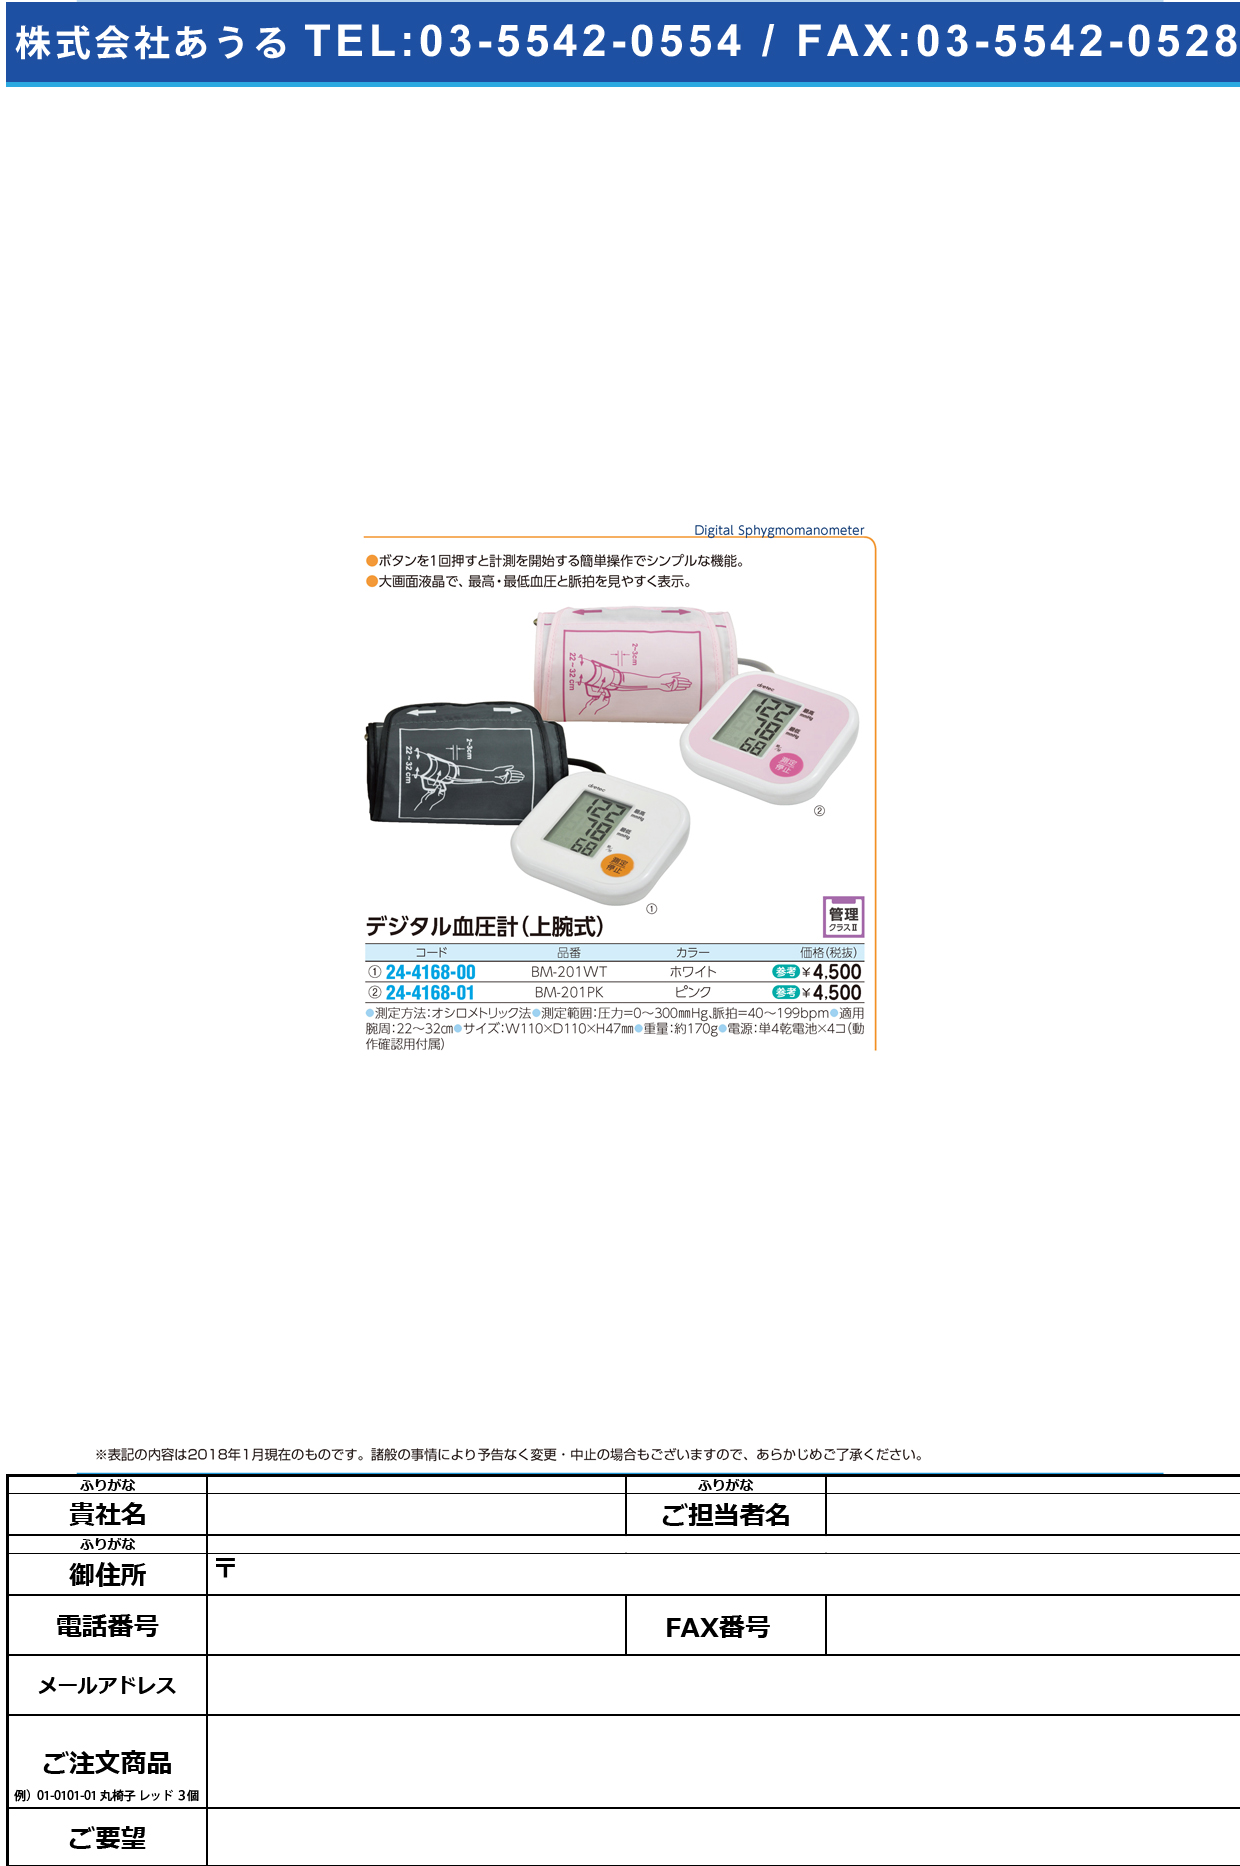 (24-4168-00)デジタル血圧計（上腕式） BM-201WT(ﾎﾜｲﾄ) ﾃﾞｼﾞﾀﾙｹﾂｱﾂｹｲ(ｼﾞｮｳﾜﾝ(ドリテック)【1台単位】【2018年カタログ商品】